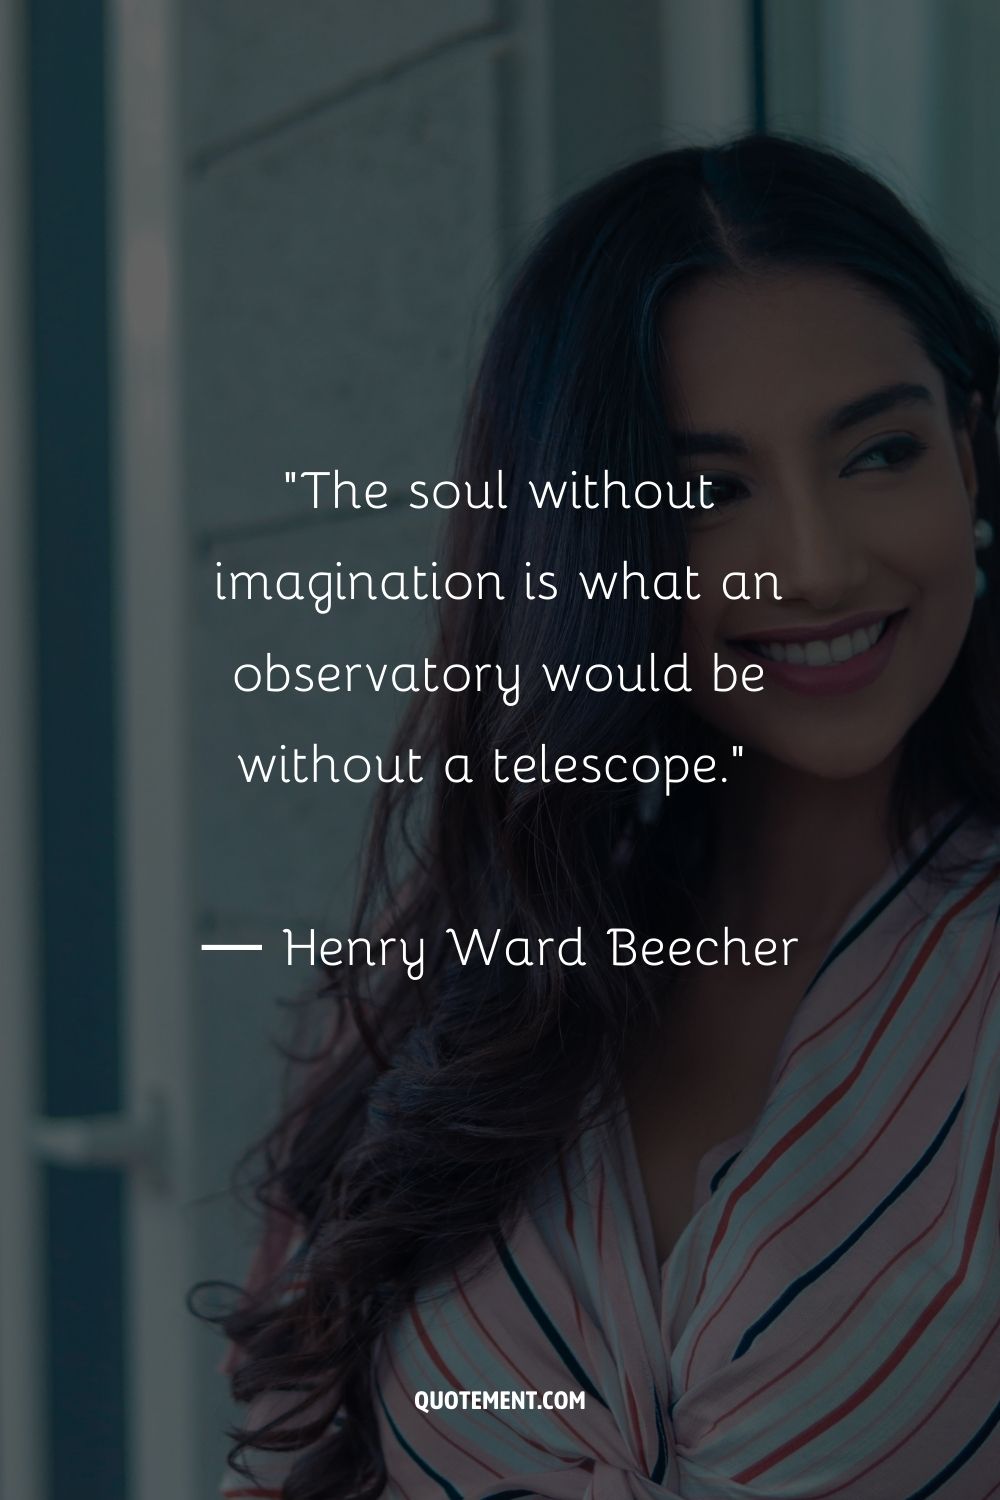 El alma sin imaginación es lo que sería un observatorio sin telescopio